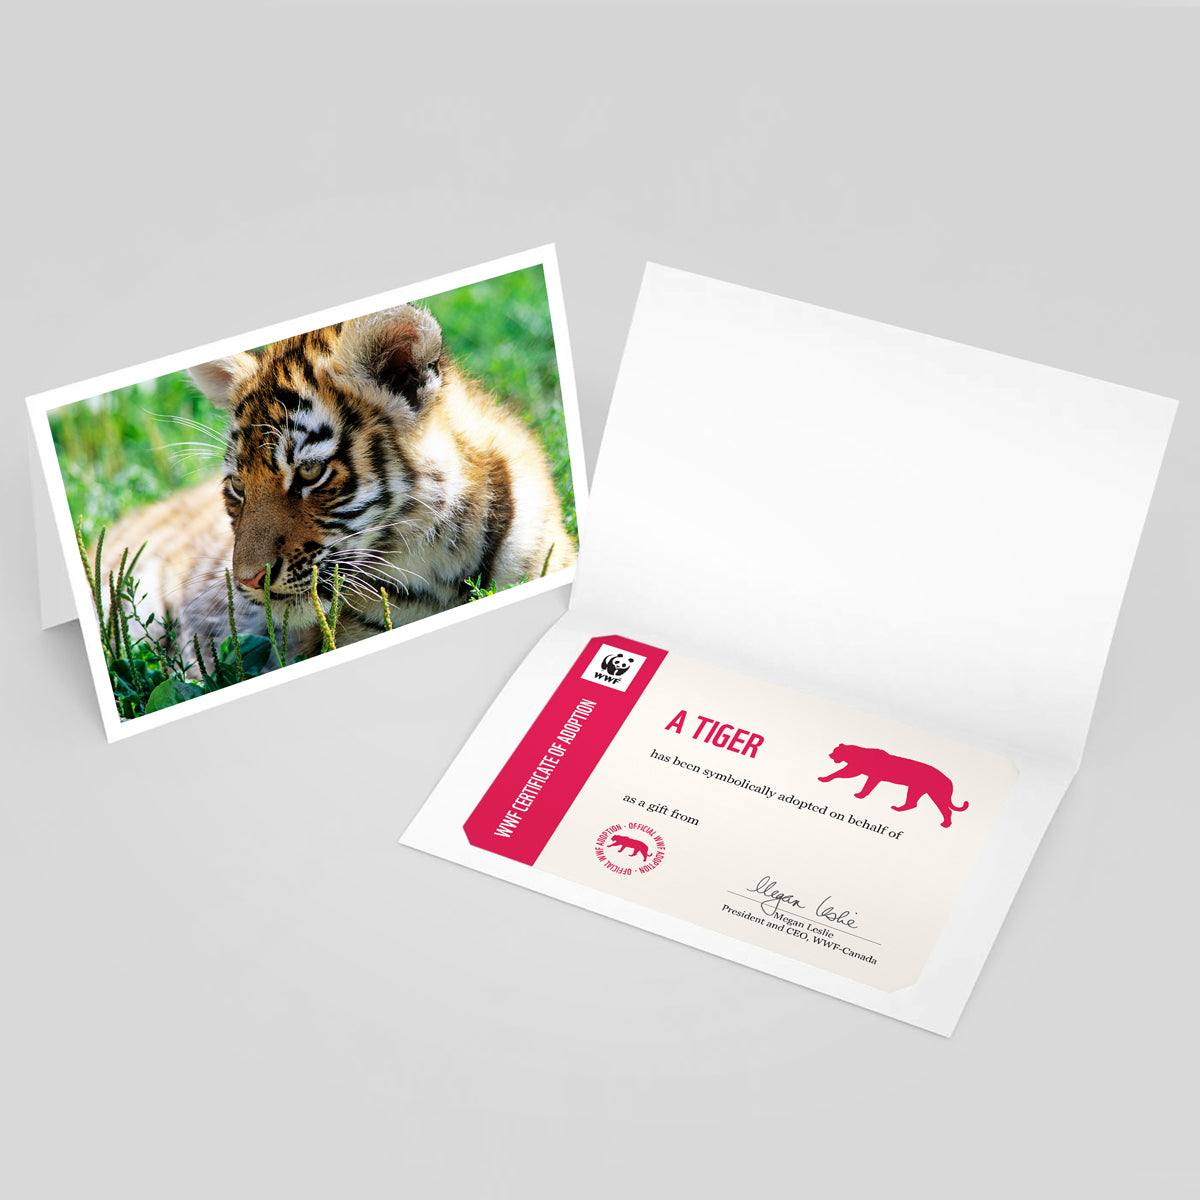 Tiger adoption card - WWF-Canada